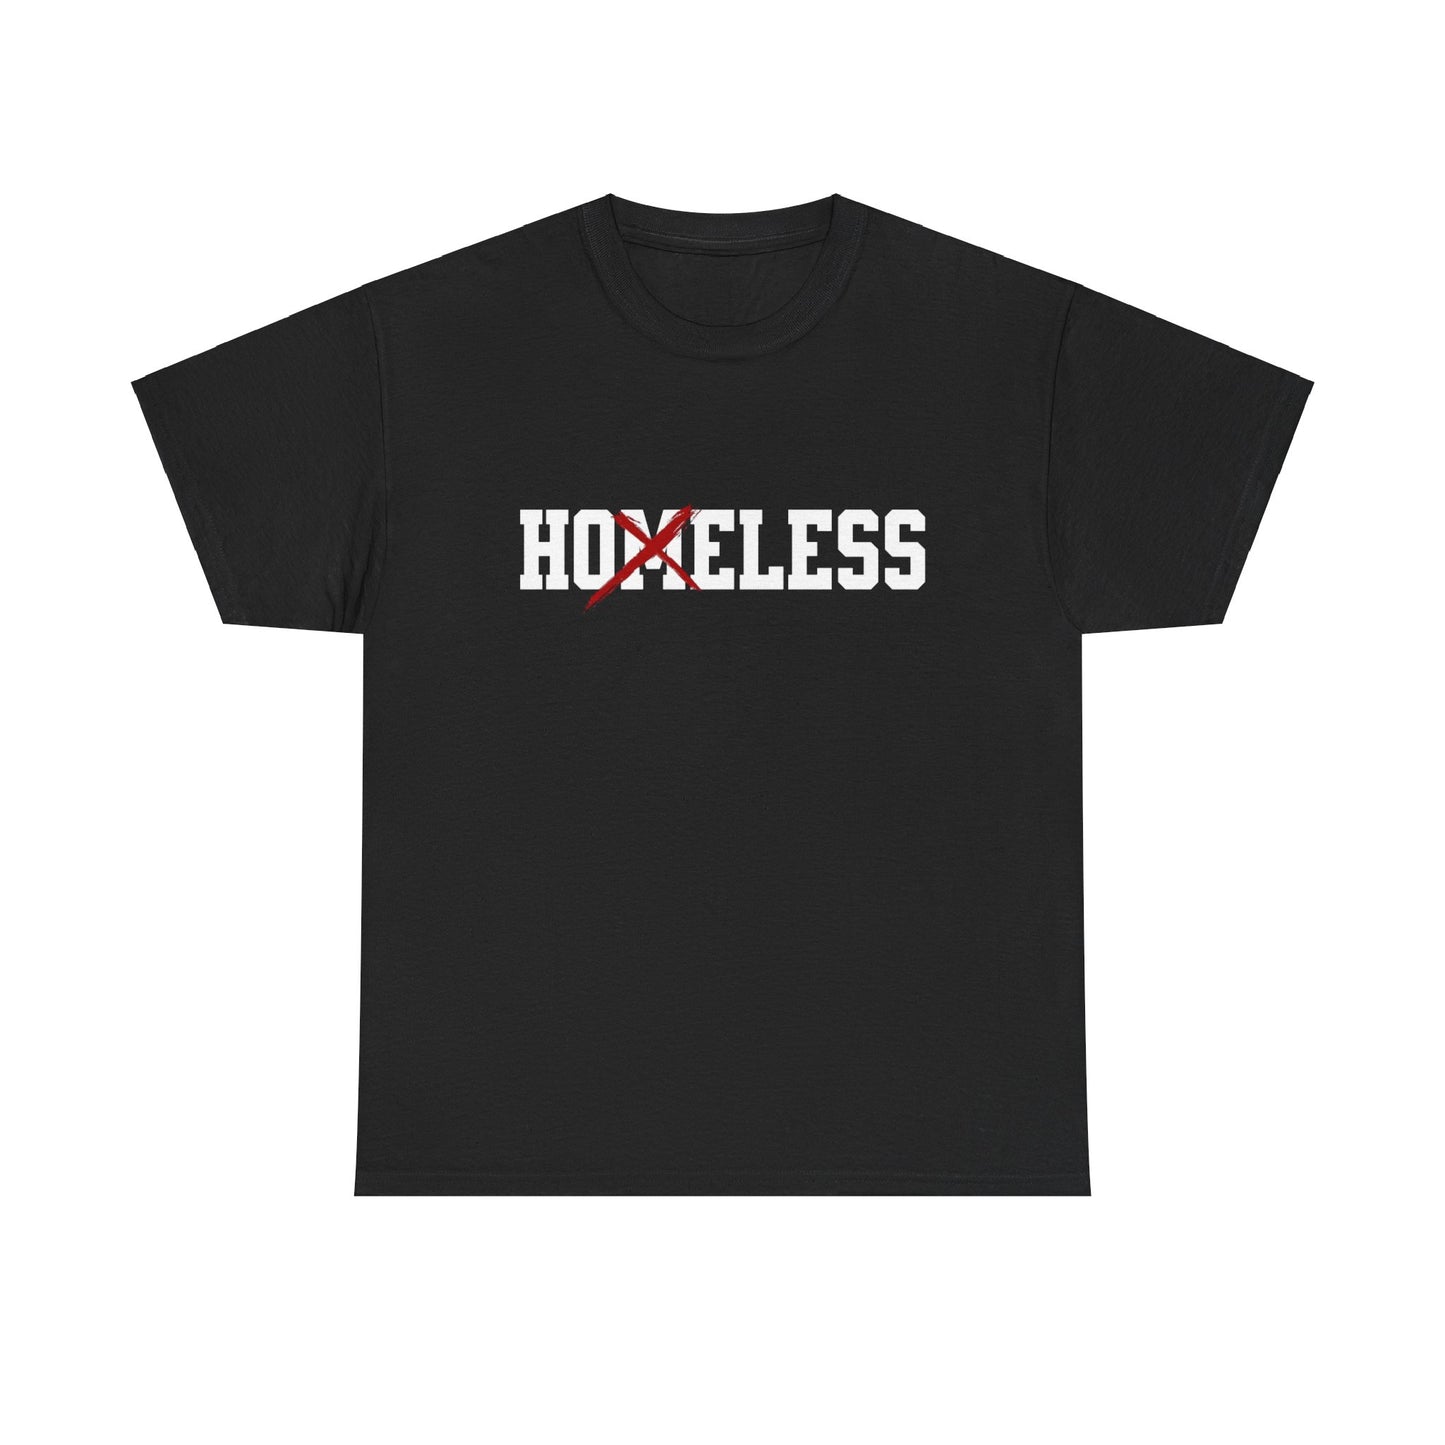 Unisex Shirt in schwarz mit dem Spruch Homeless drauf. Das M ist durchgestrichen; also steht auf dem Shirt Hoeless.